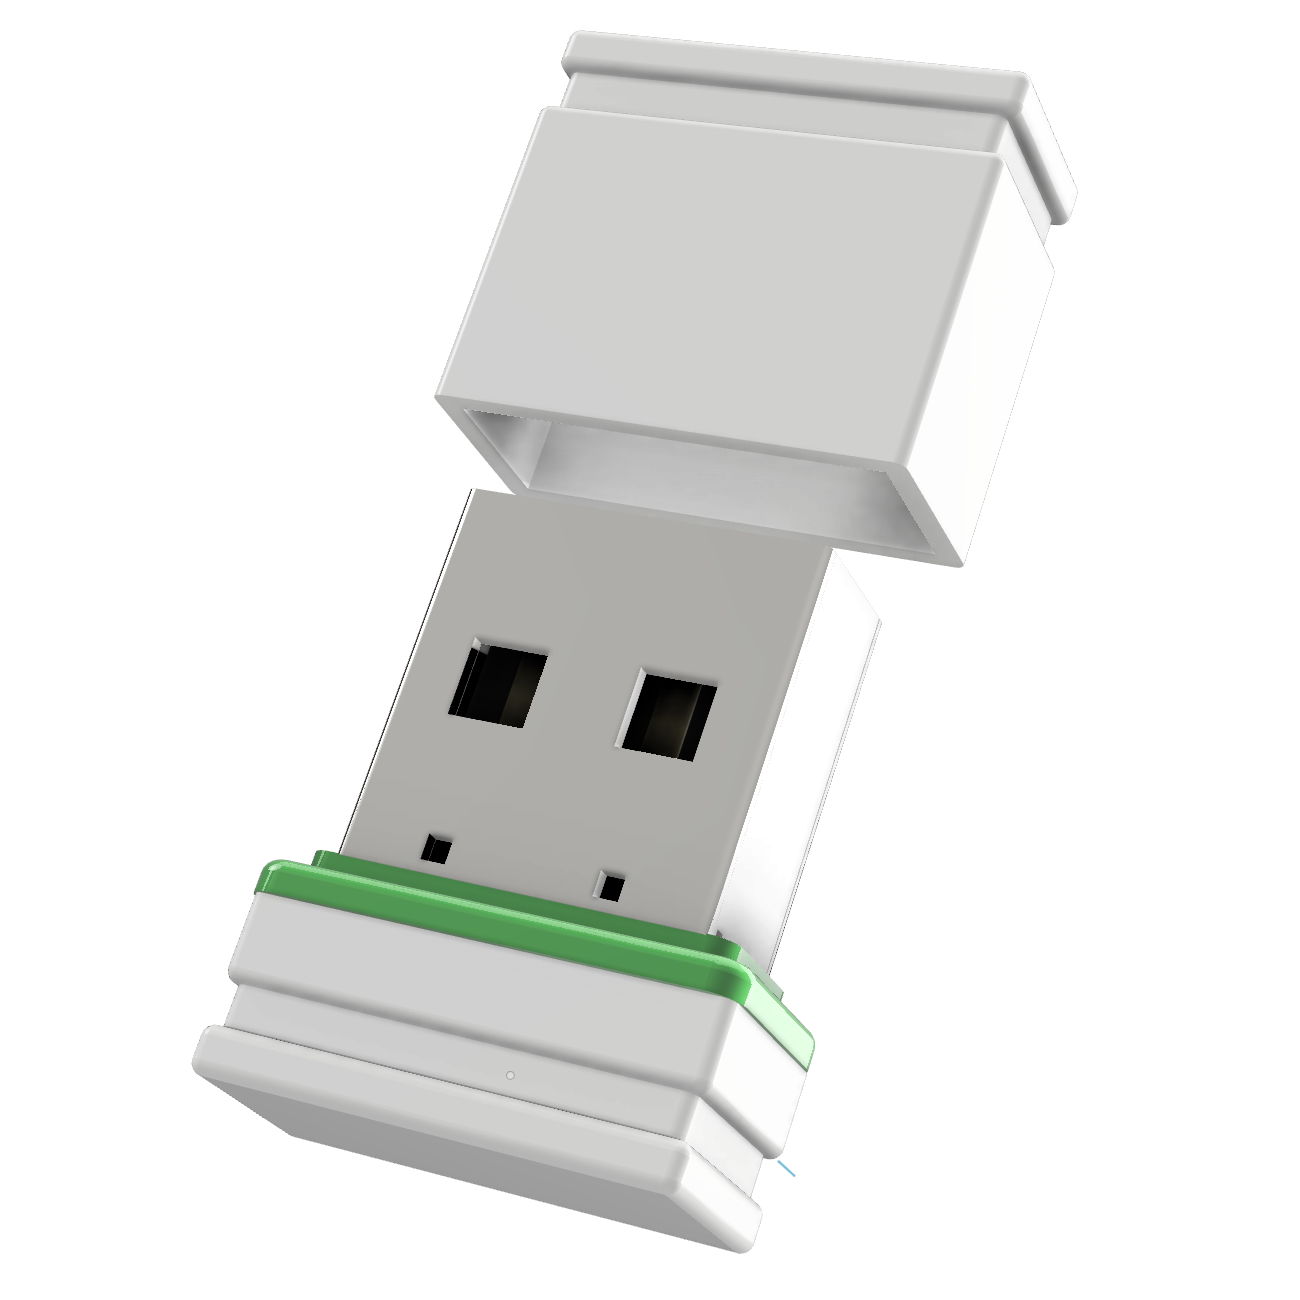 USB GERMANY (Weiss/Grün, 8 P1 ®ULTRA GB) Mini USB-Stick